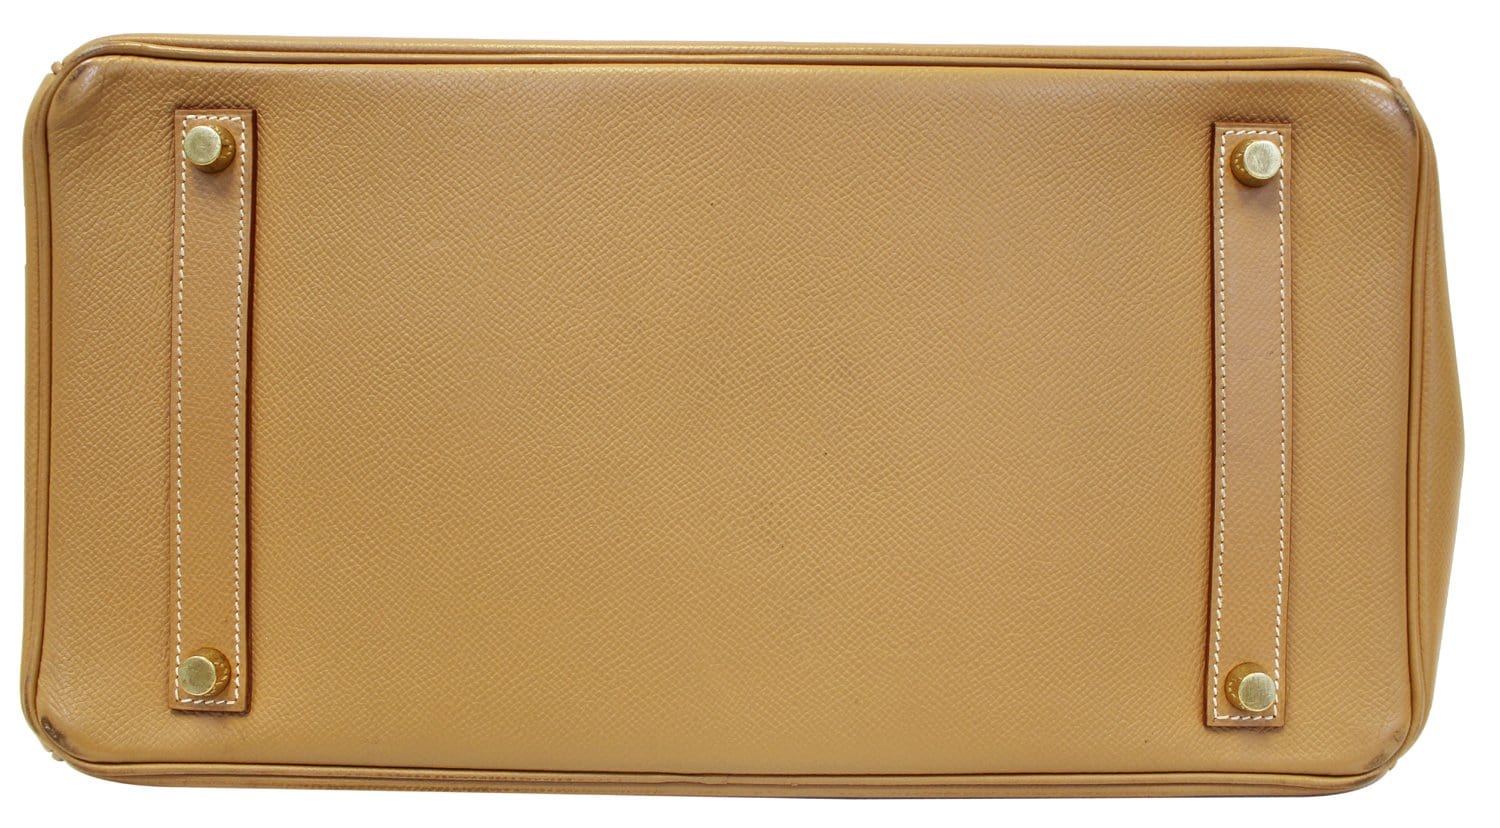 Hermes 35cm Gold Epsom Leather Birkin Bag with Gold Hardware